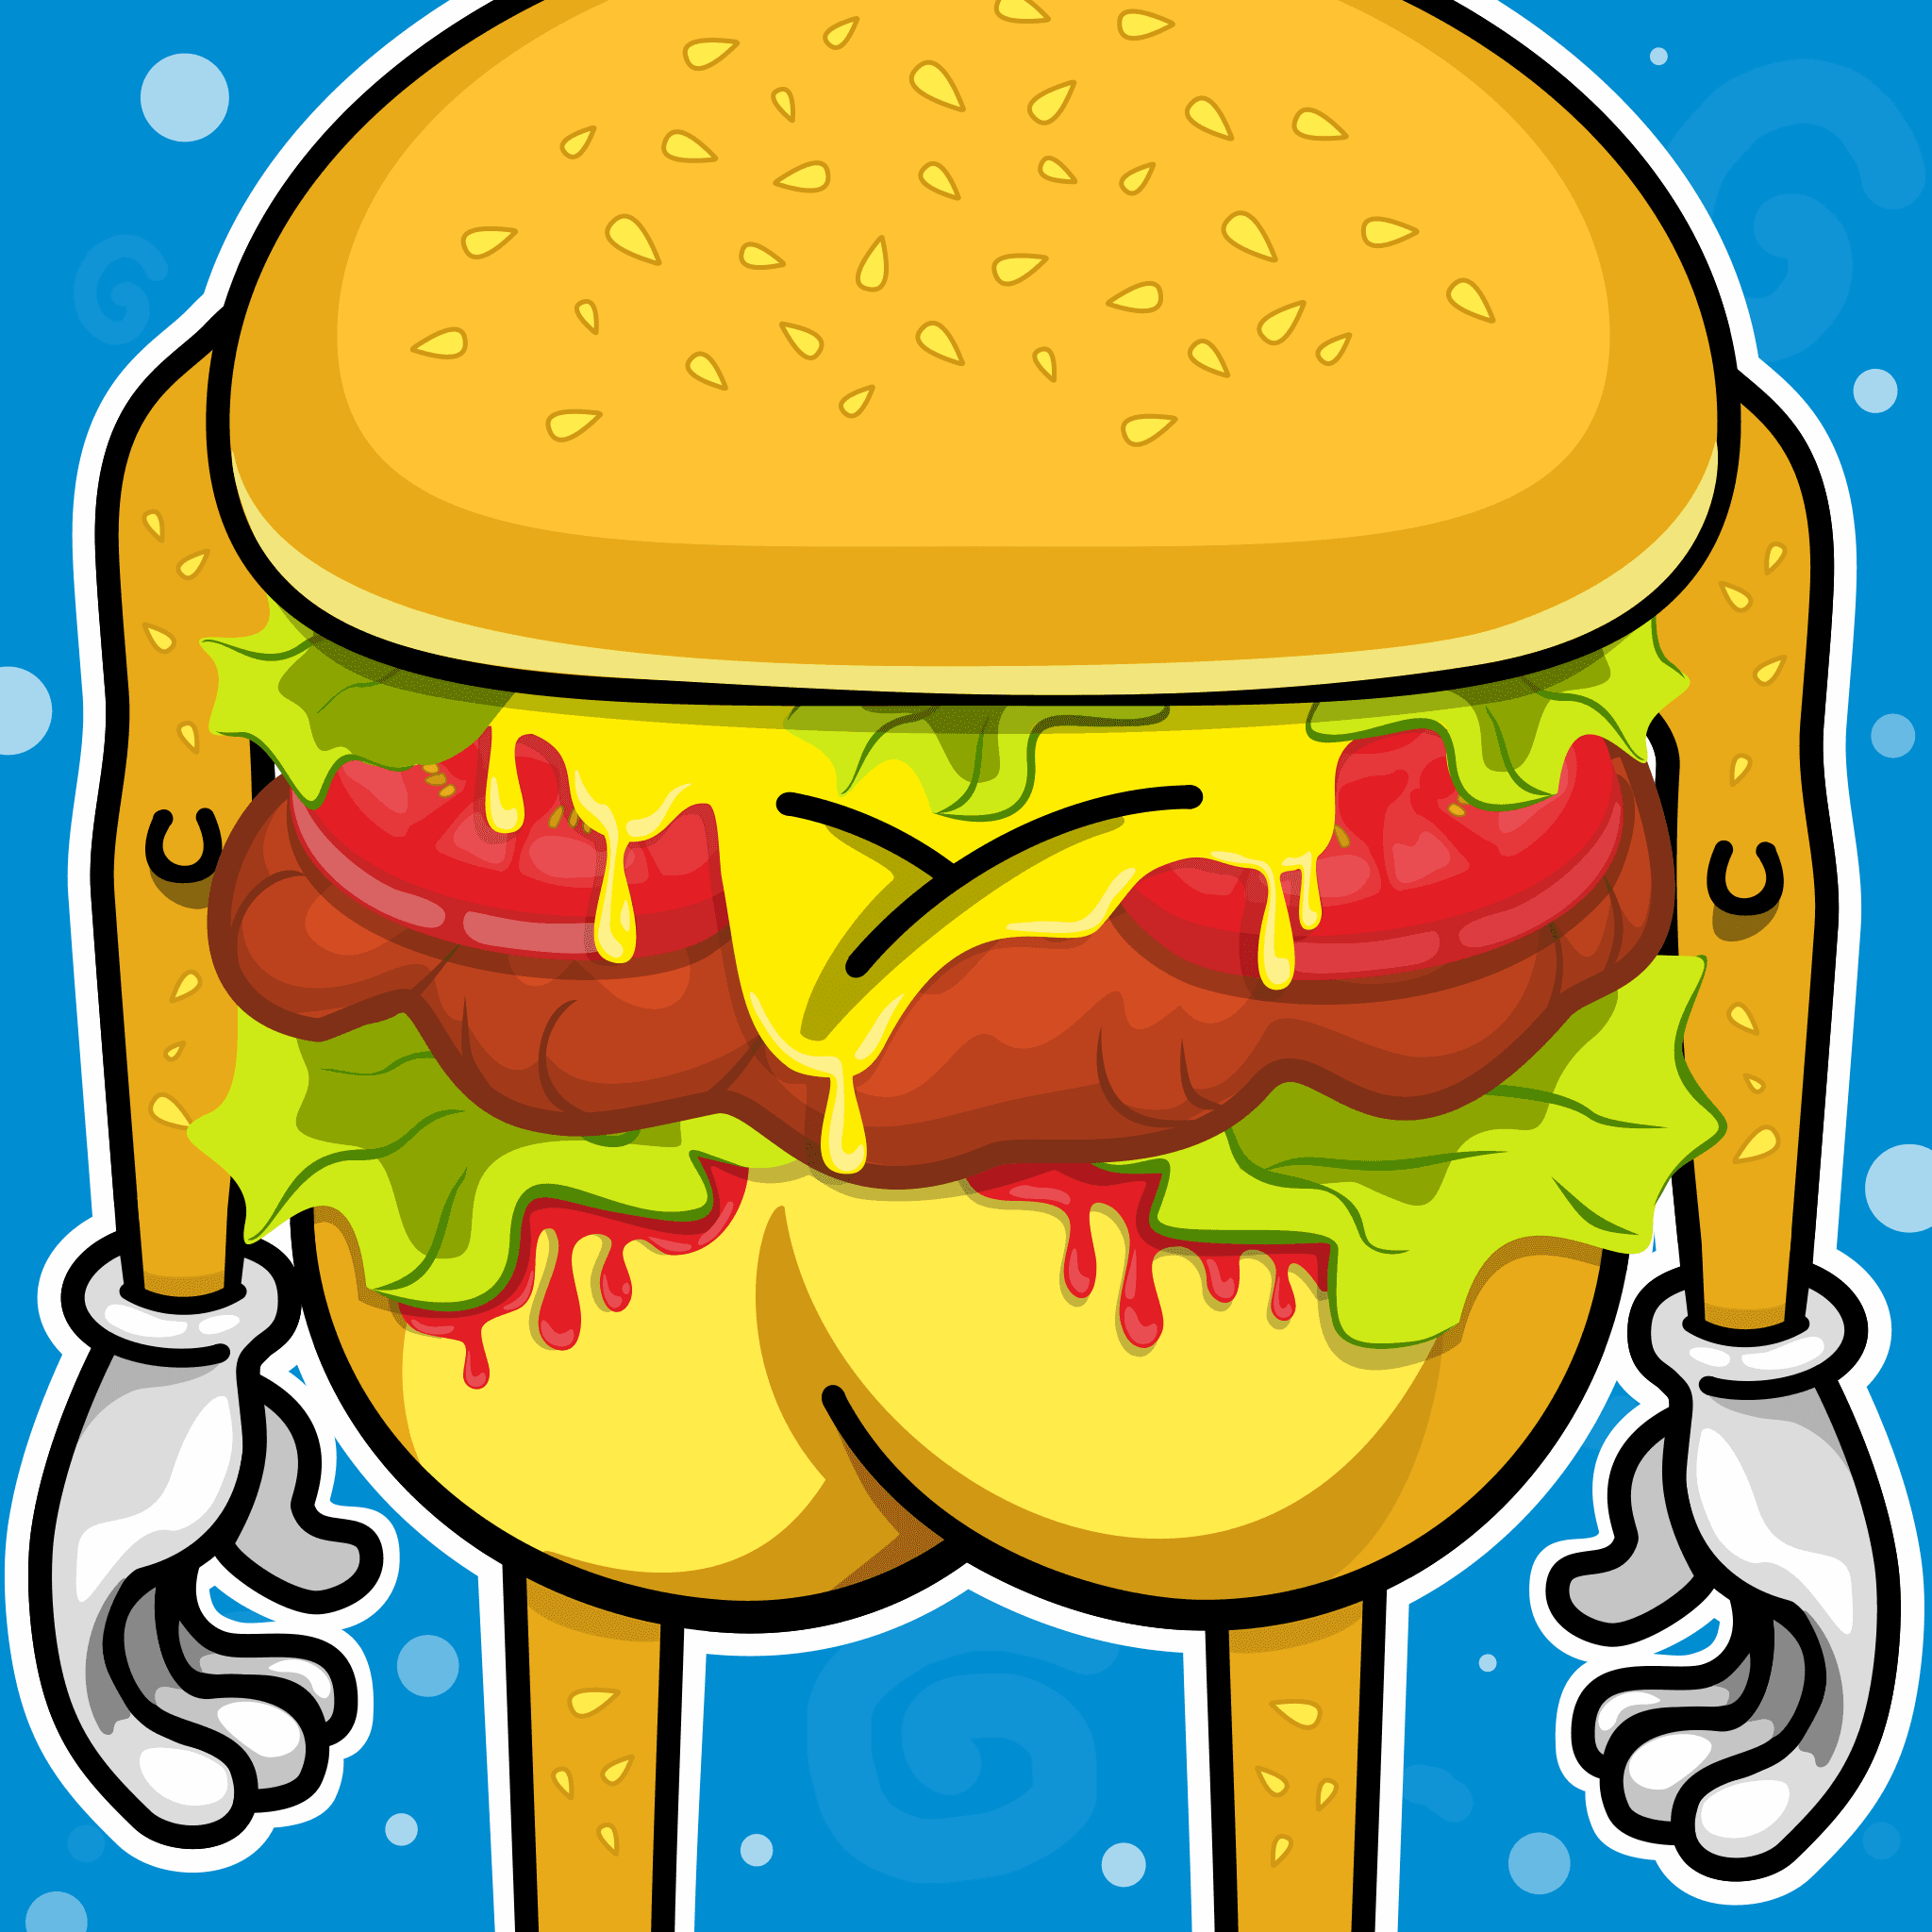 Burger's butt